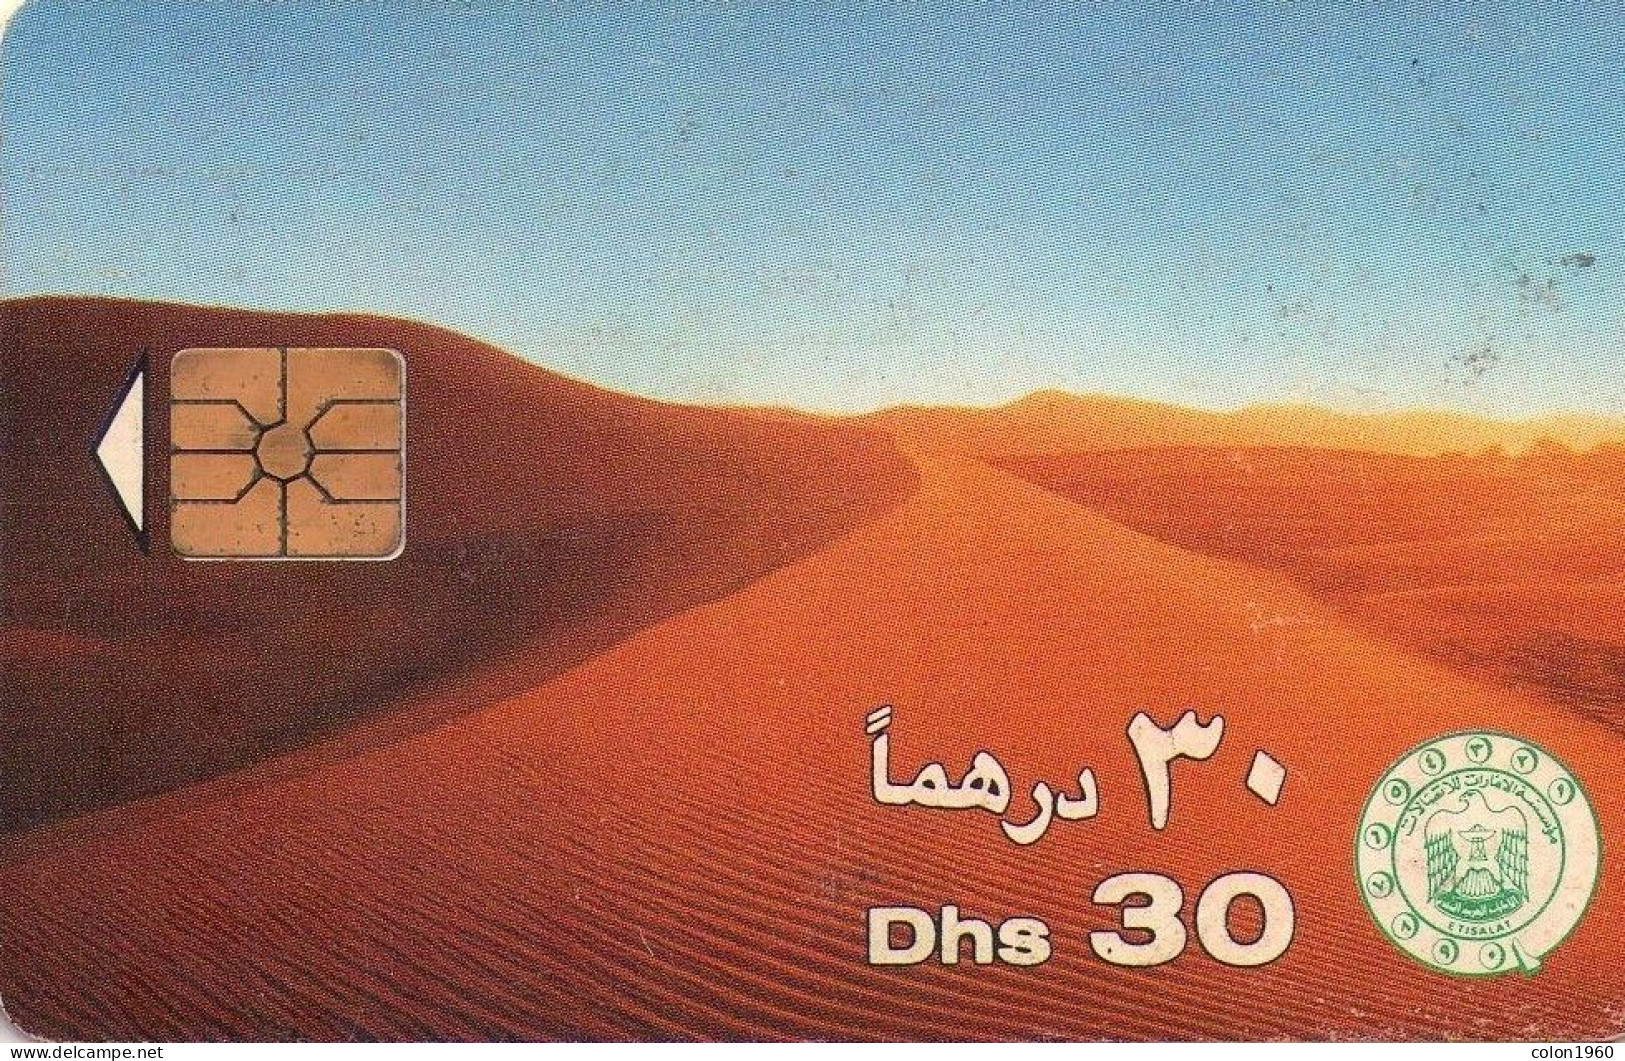 EMIRATOS ARABES UNIDOS. AE-ETI-CHP-0002C. Desert Sand Dunes (CN "9511"). 1995. (052) - Ver. Arab. Emirate